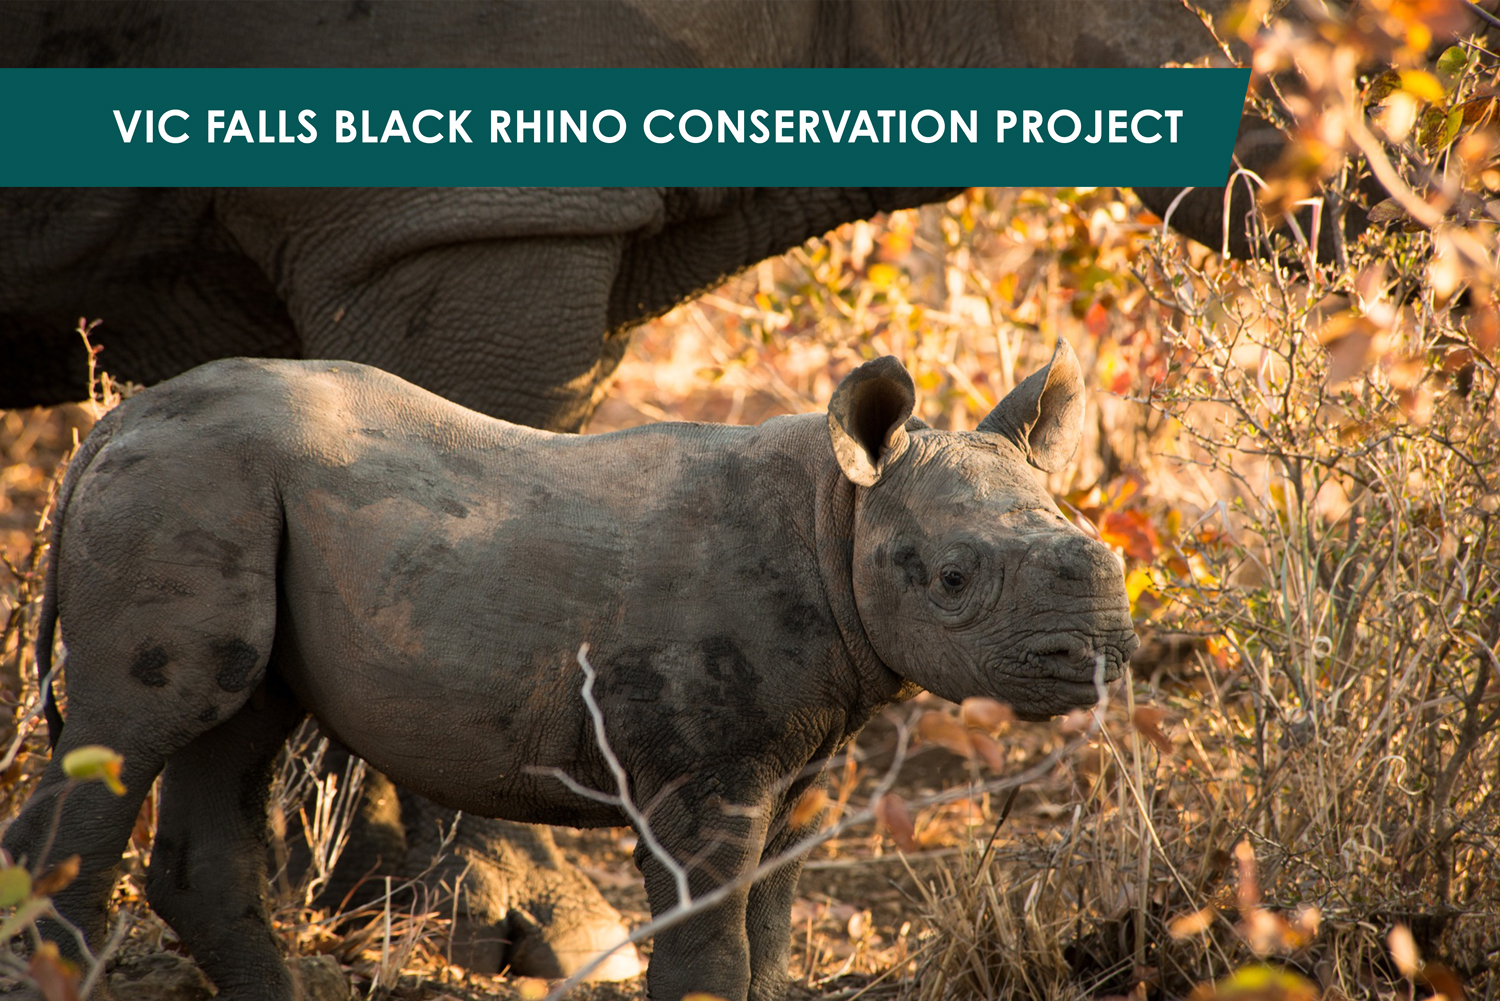 Victoria Falls Black Rhino Conservation Project